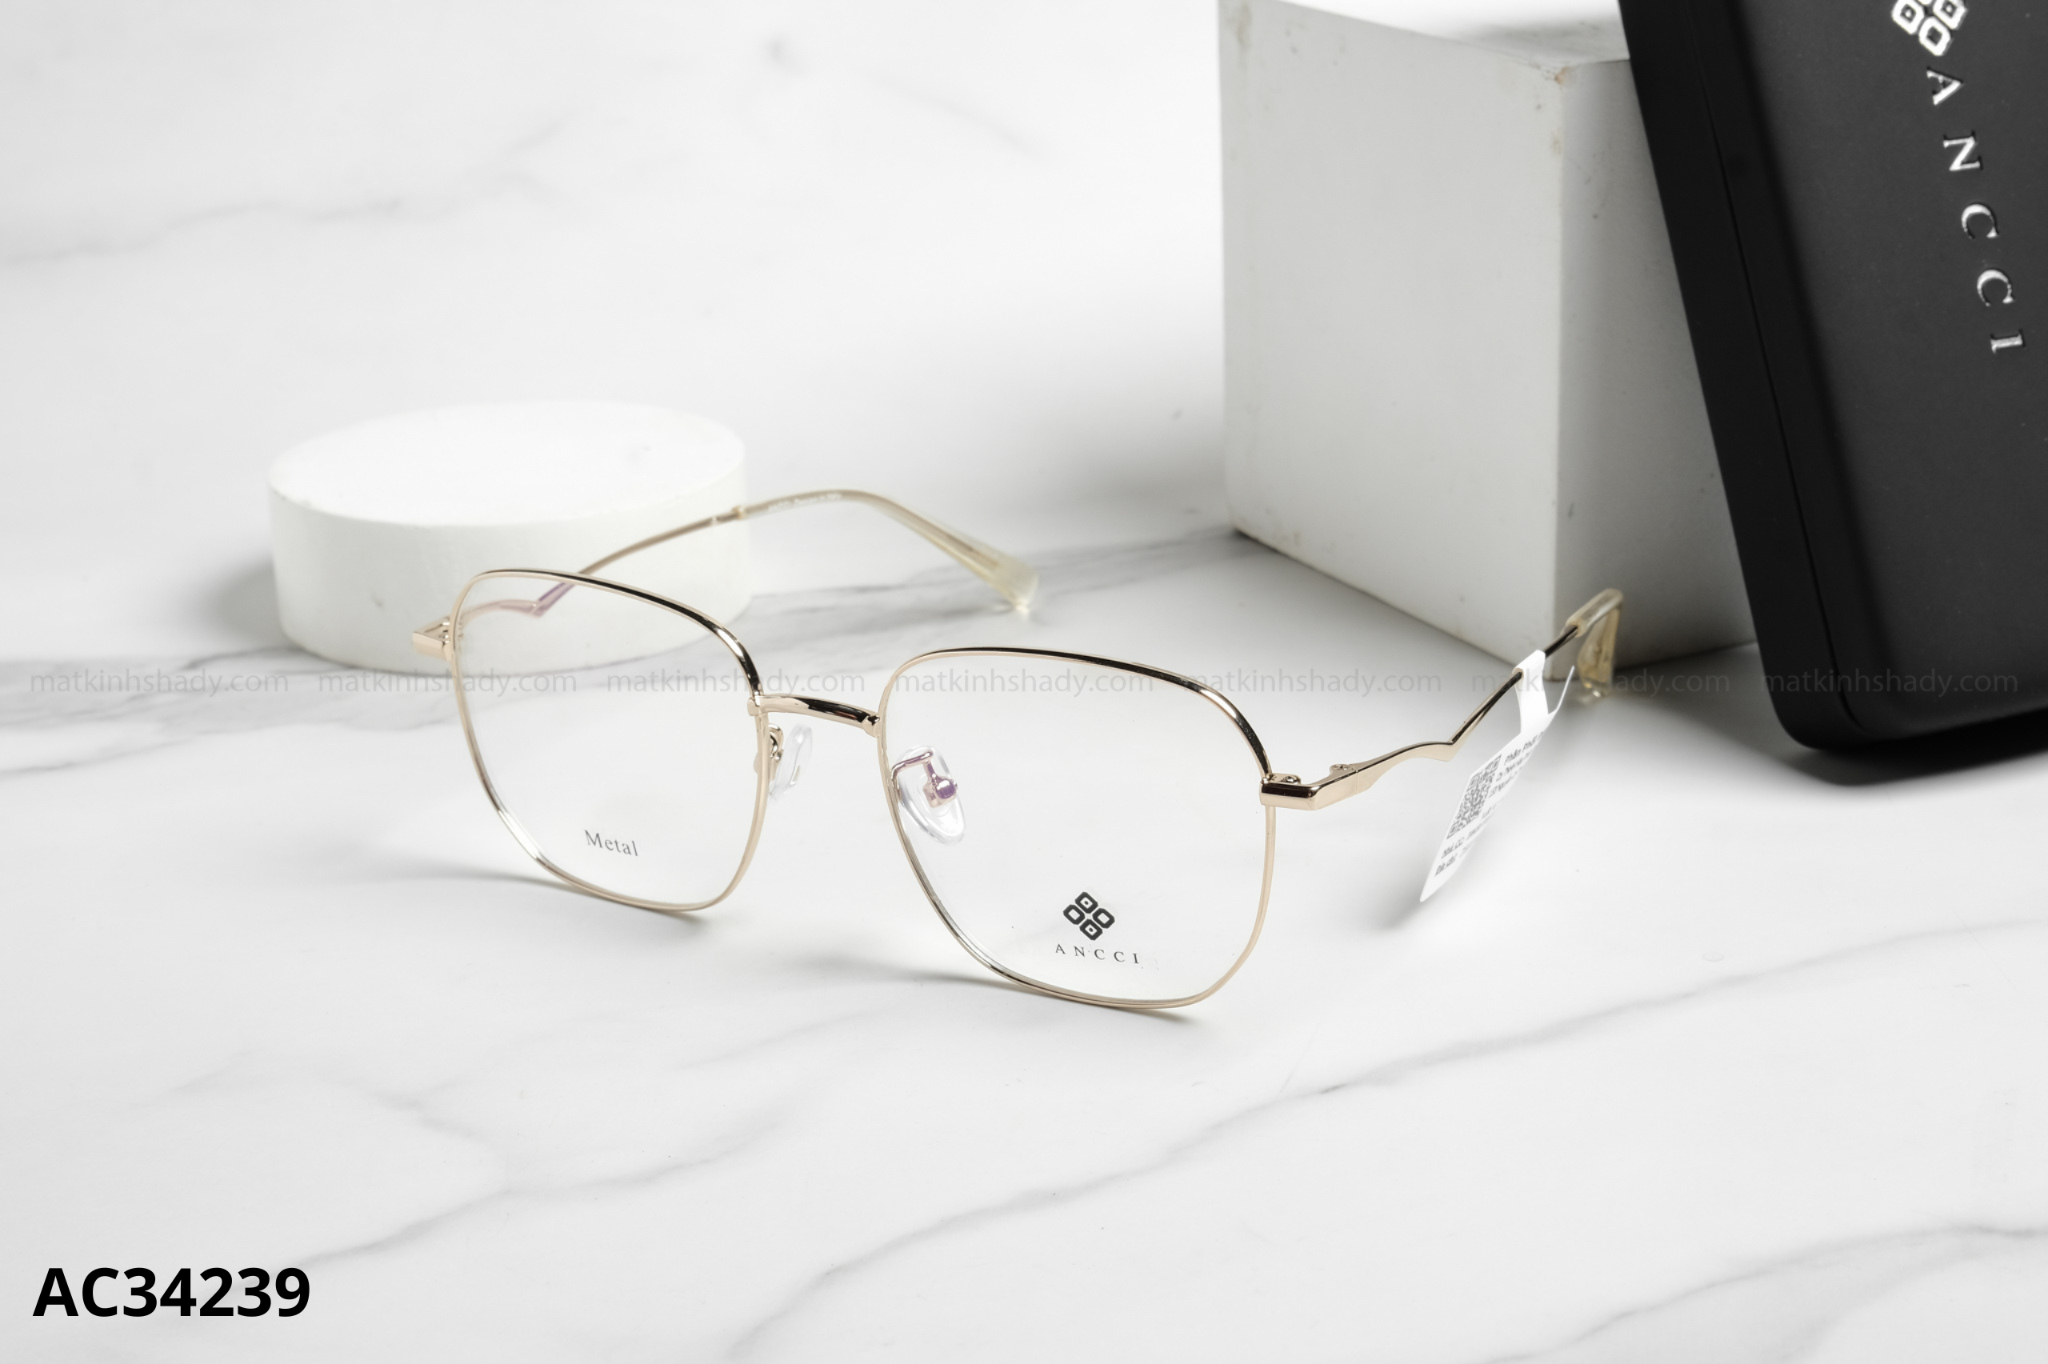  ANCCI Eyewear - Glasses - AC34239 